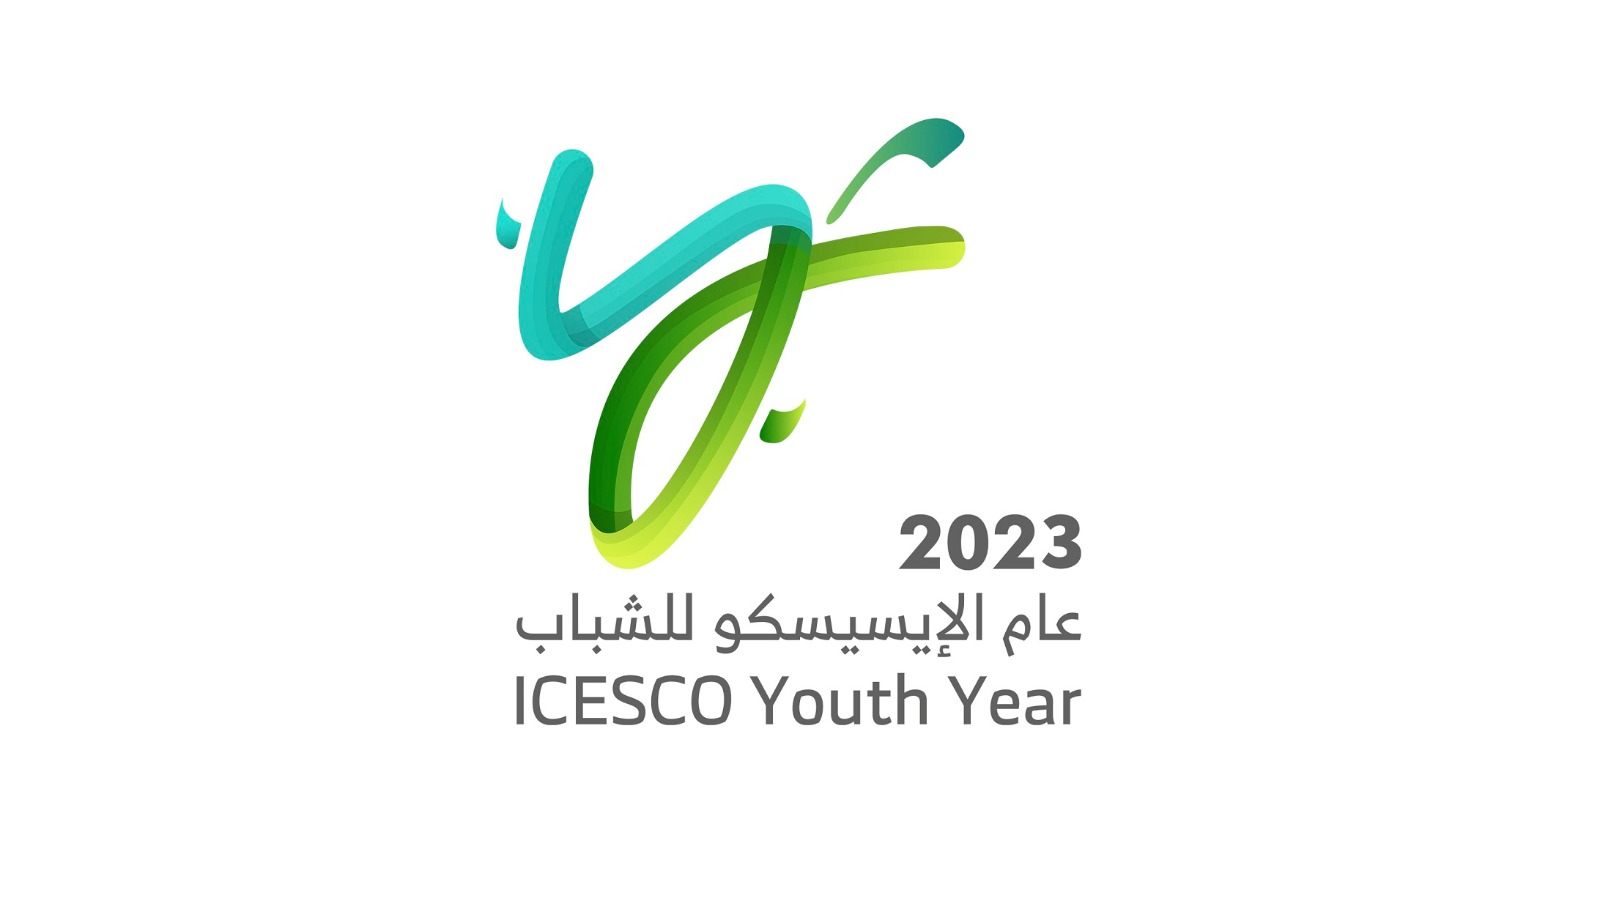 Sous le patronage et en présence du Président égyptien : lancement de l’Année de l’ICESCO pour la Jeunesse le 7 octobre 2023 lors d’une célébration internationale à la capitale administrative